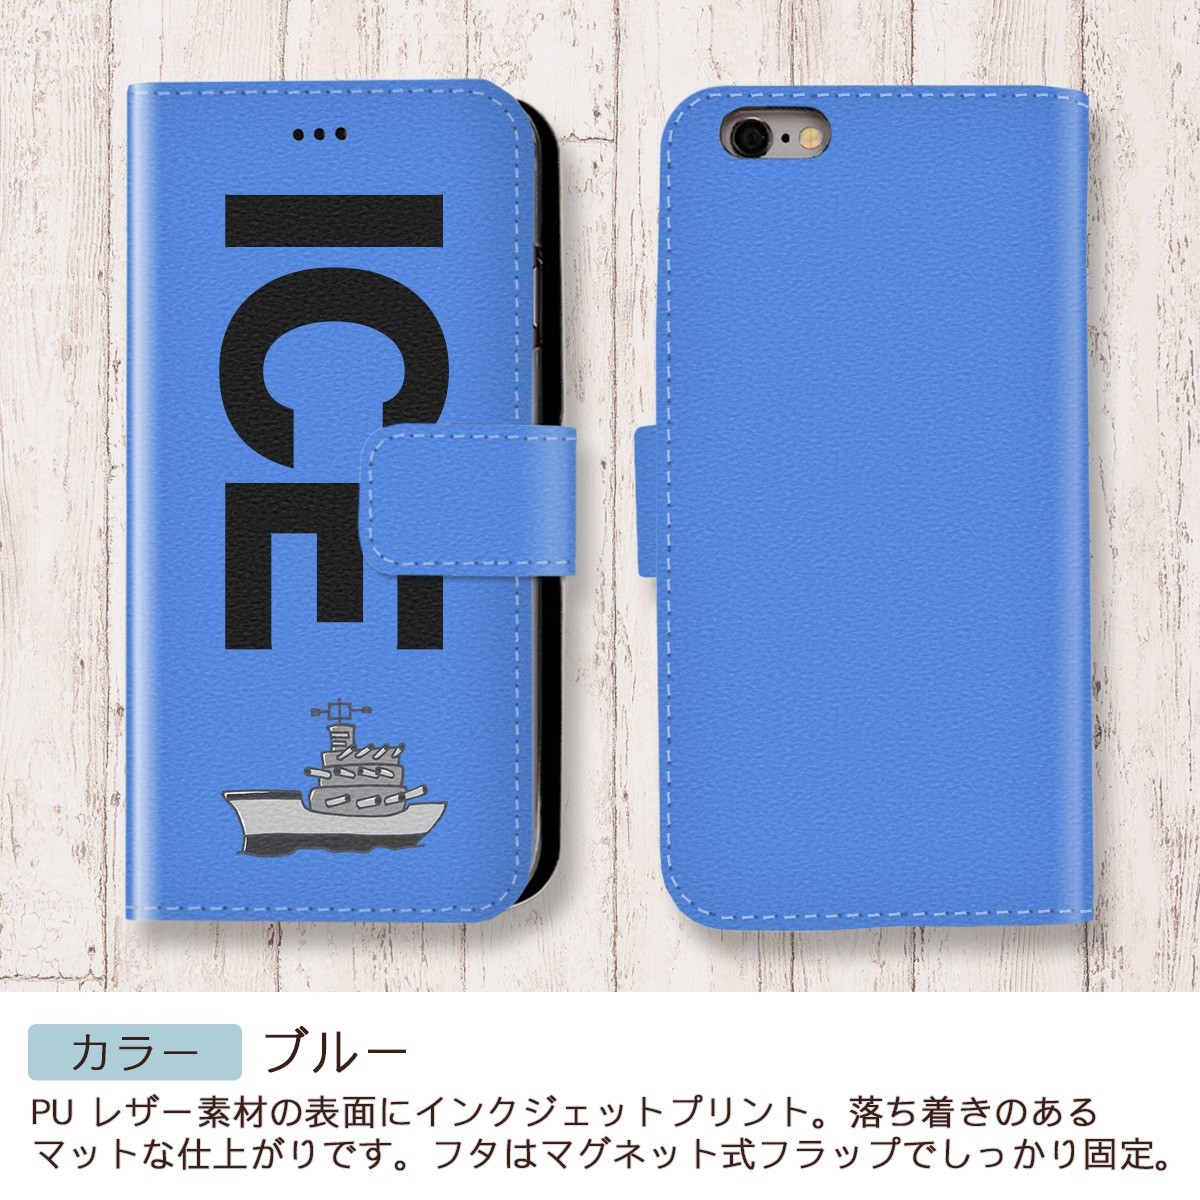 軍艦 おもしろ X XSケース ケース iPhone X iPhone XS ケース 手帳型 アイフォン かわいい カッコイイ メンズ レディース_画像4